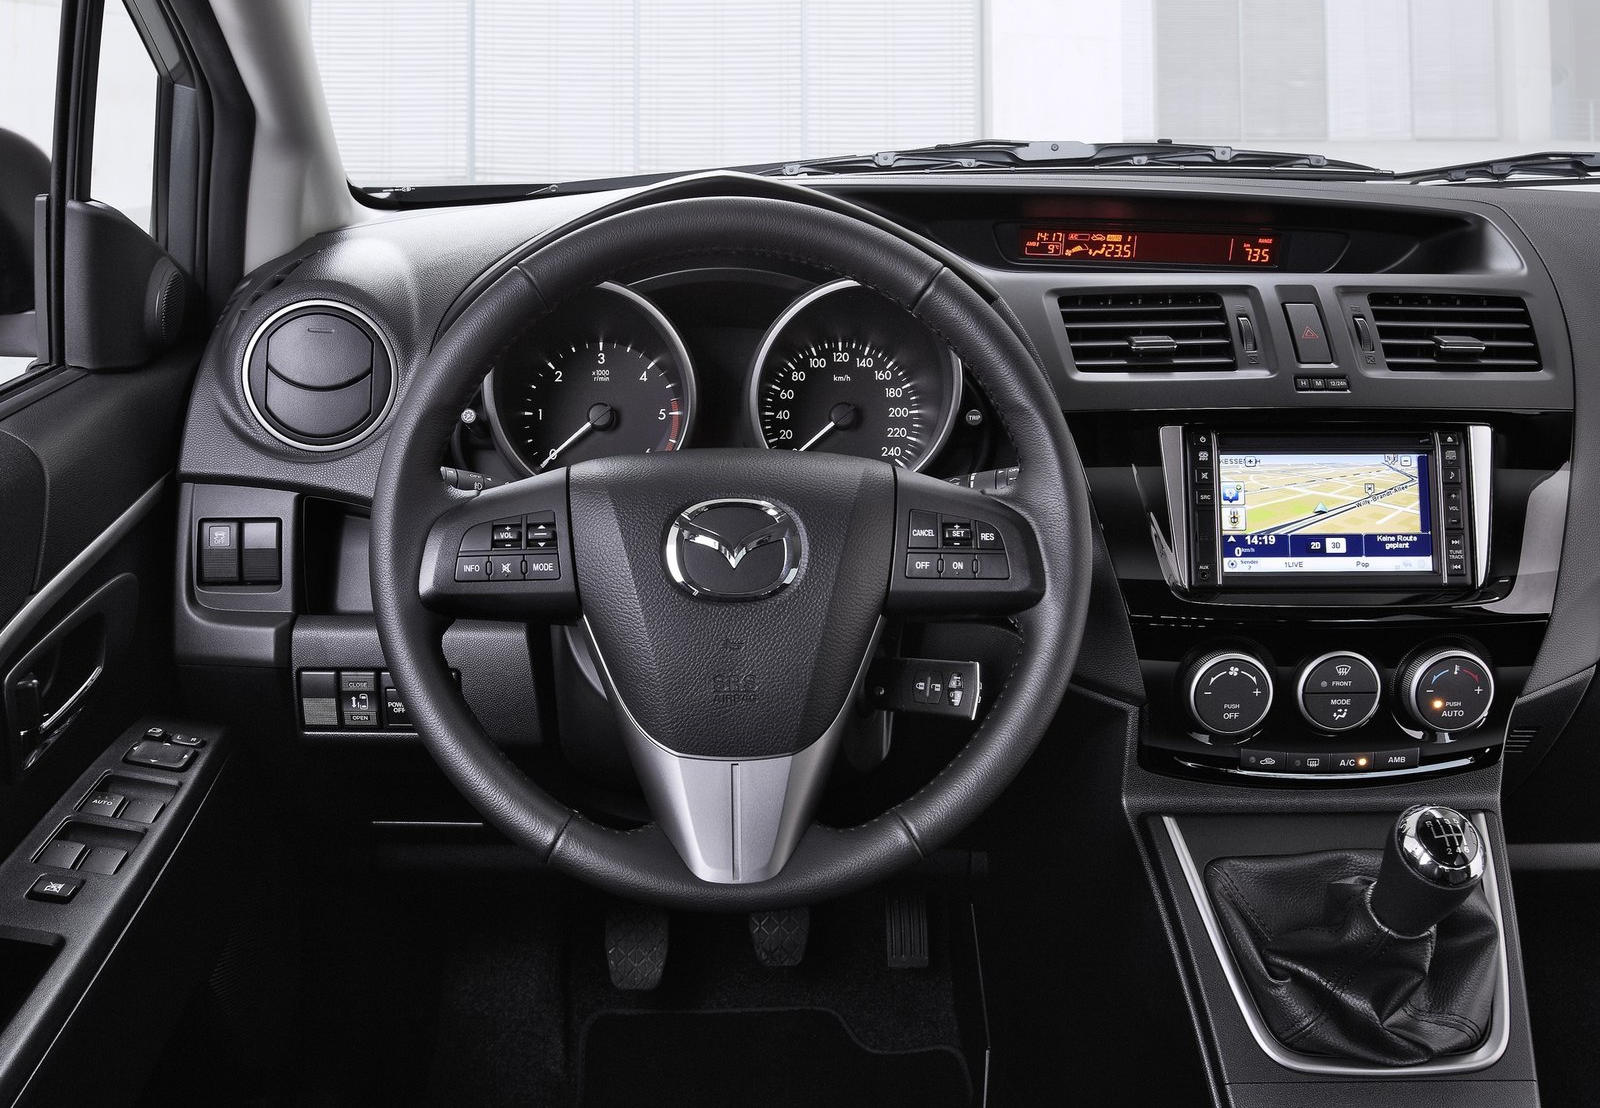 2014 Mazda 5 Interior Photos | CarBuzz